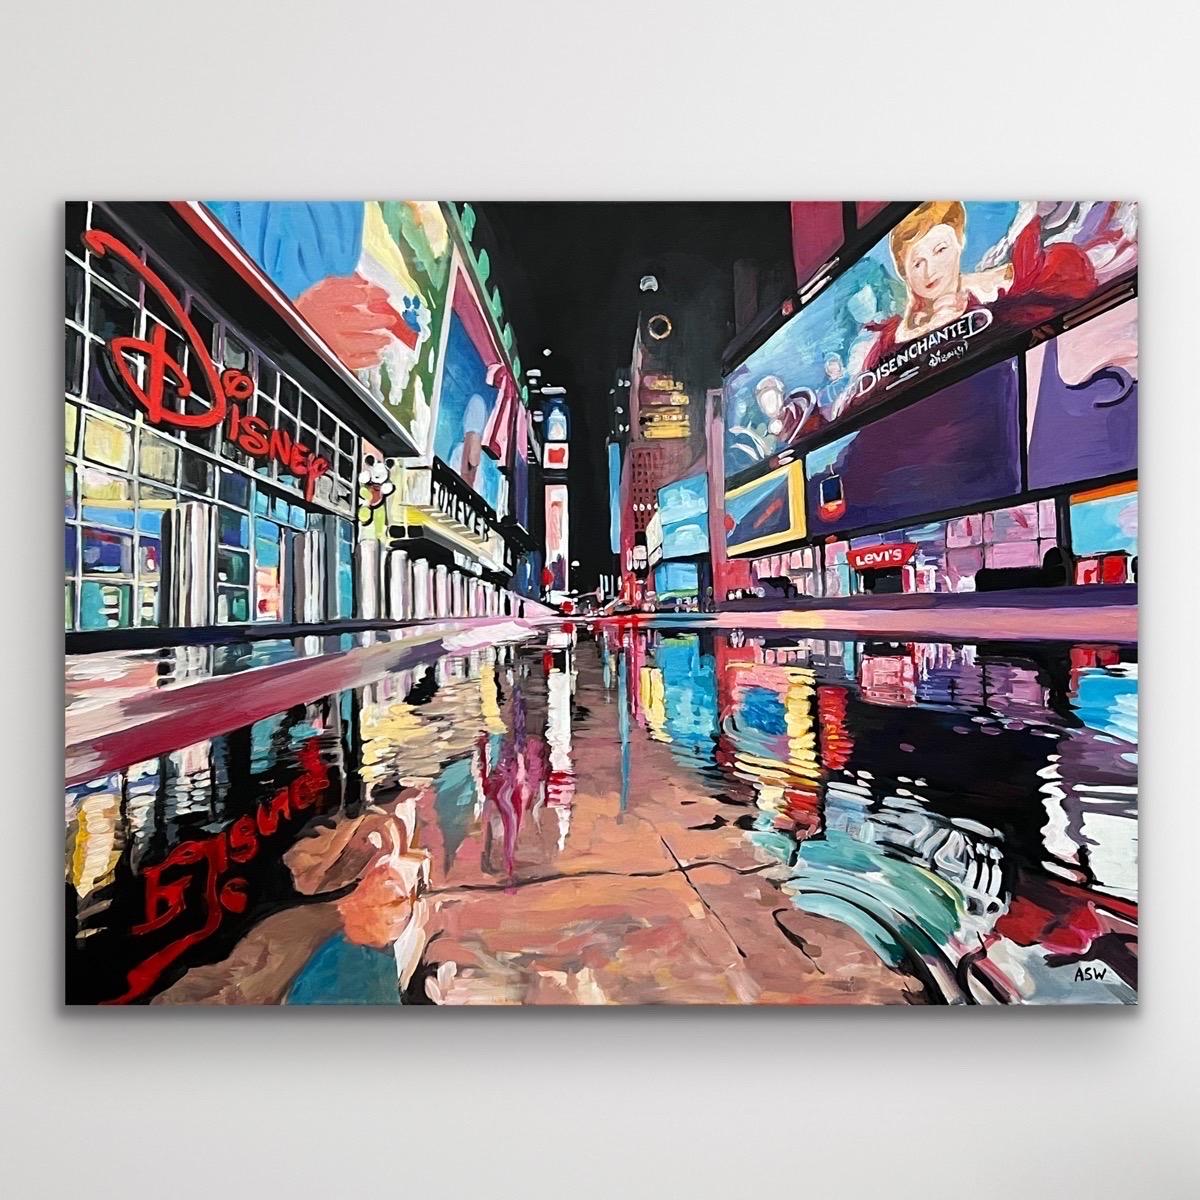 Times Square New York City Reflections d'après la pluie II d'un artiste urbain britannique - Painting de Angela Wakefield